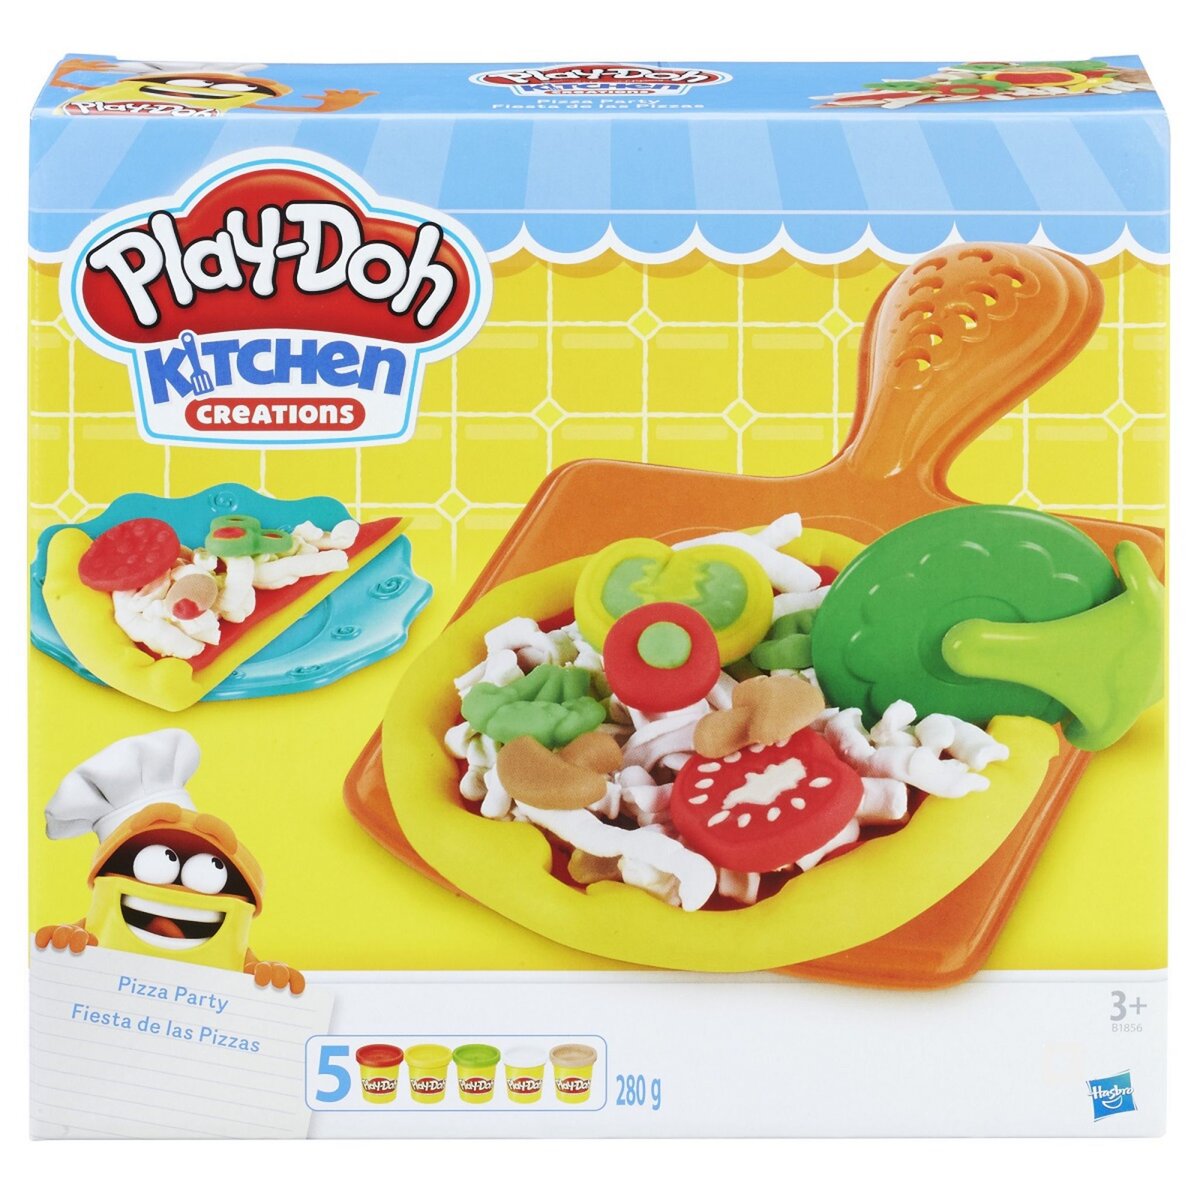 Play-Doh Kitchen, La Pizzeria avec 5 Pots de Pate a Modeler